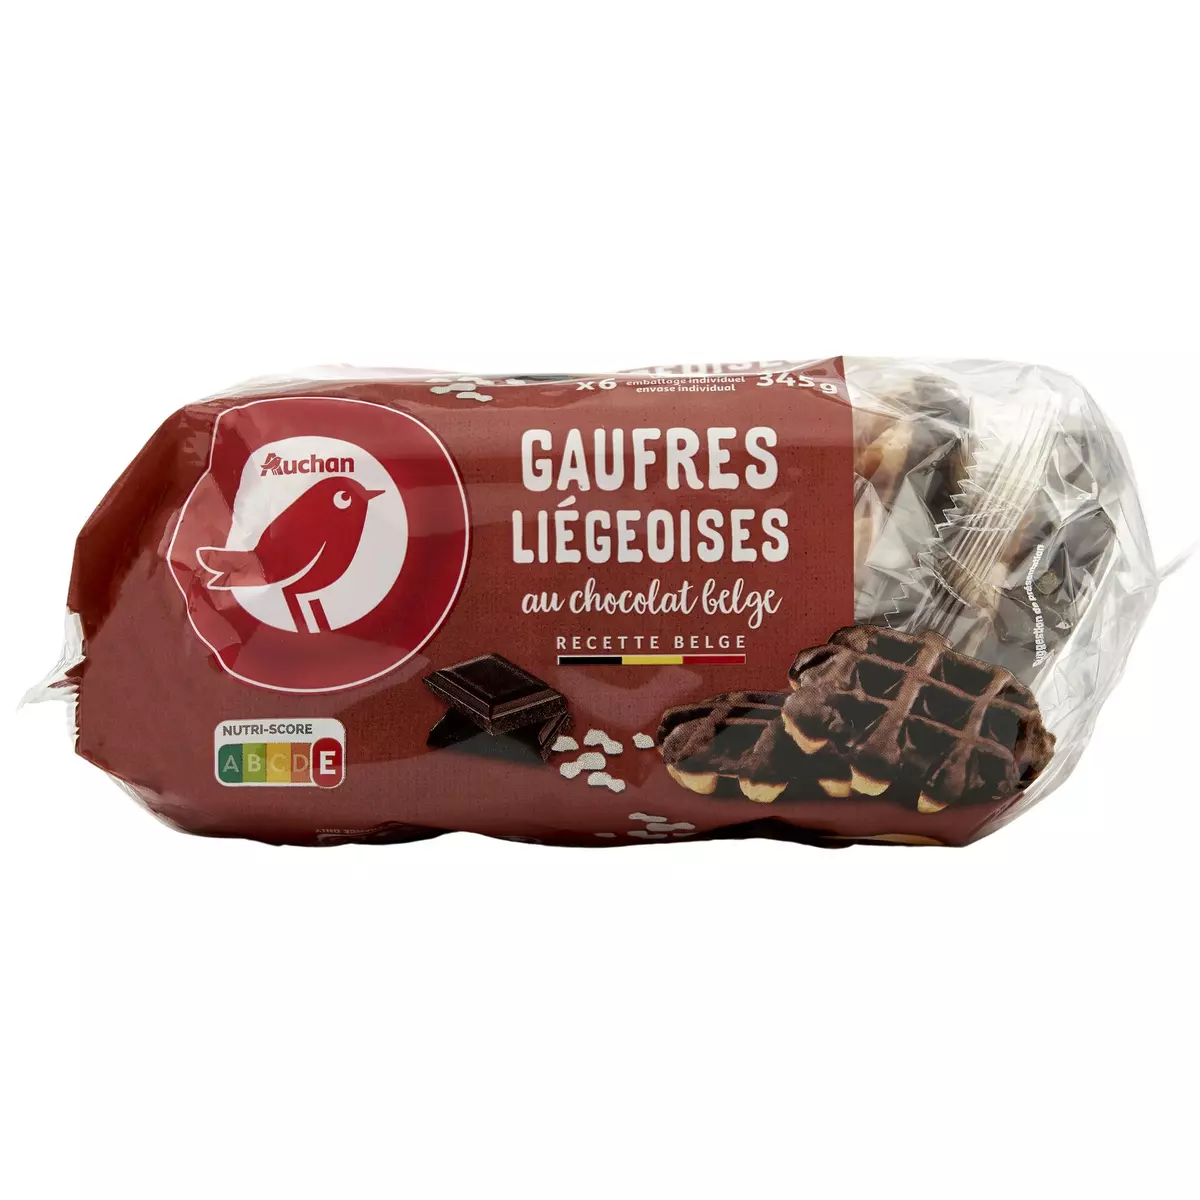 AUCHAN Gaufres liégeoises nappées au chocolat belge sachets individuels 6 gaufres 345g